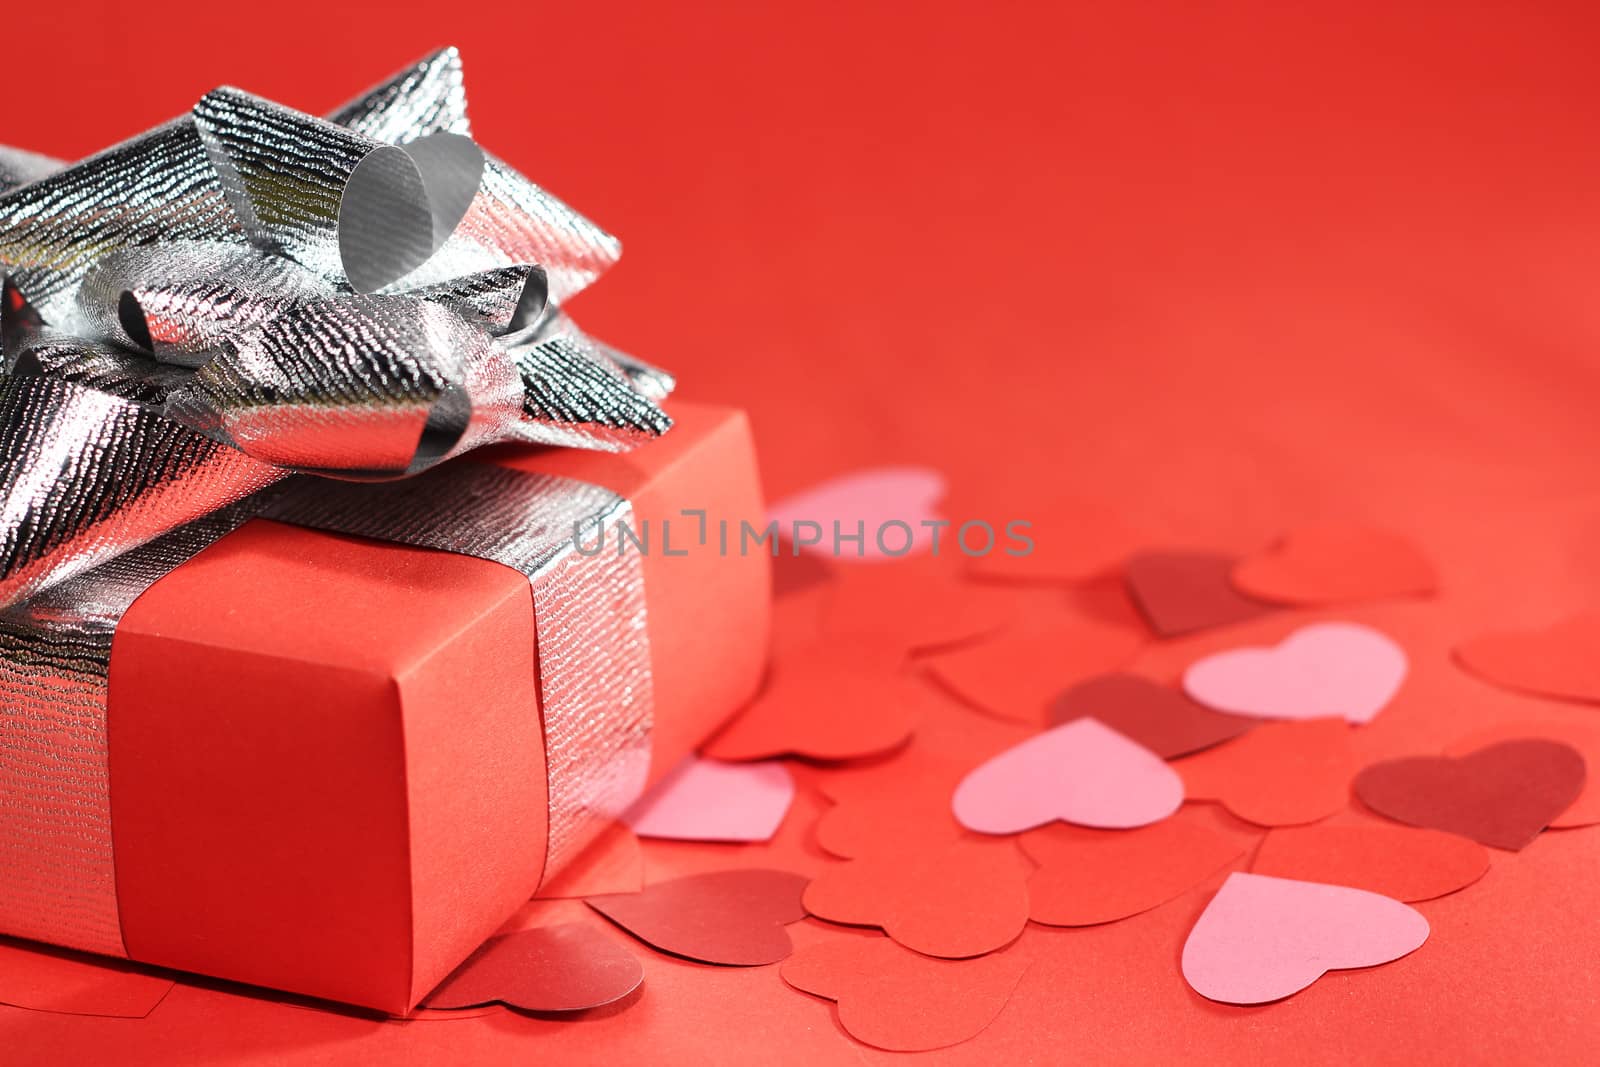 Valentines Day love gift by destillat